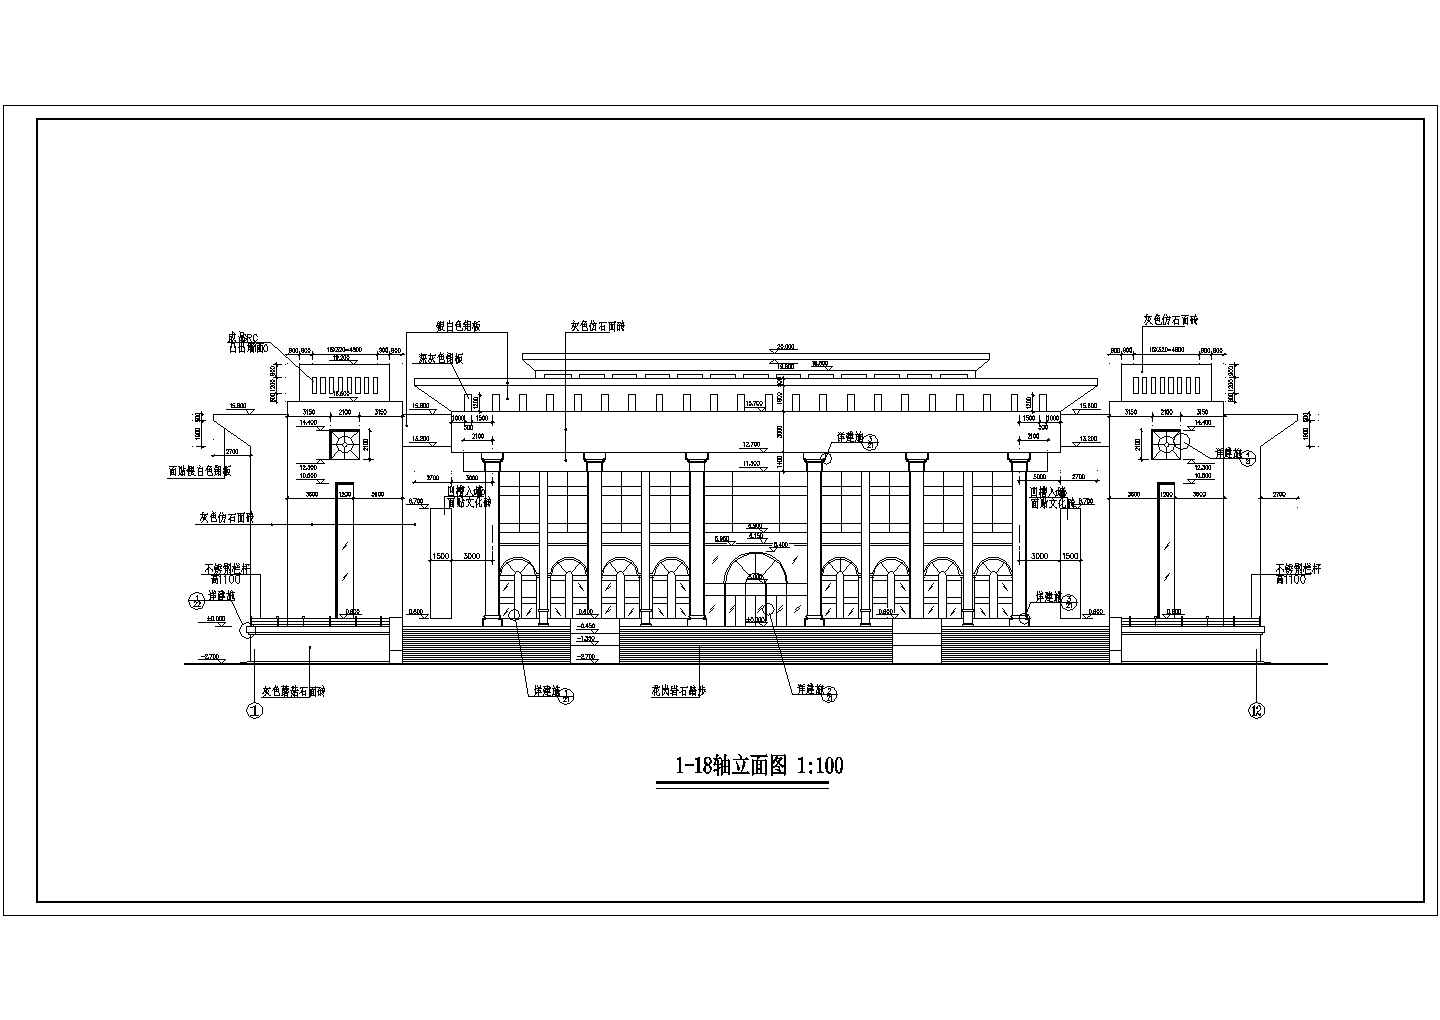 【新疆】2层框架结构大学小礼堂建筑设计施工图